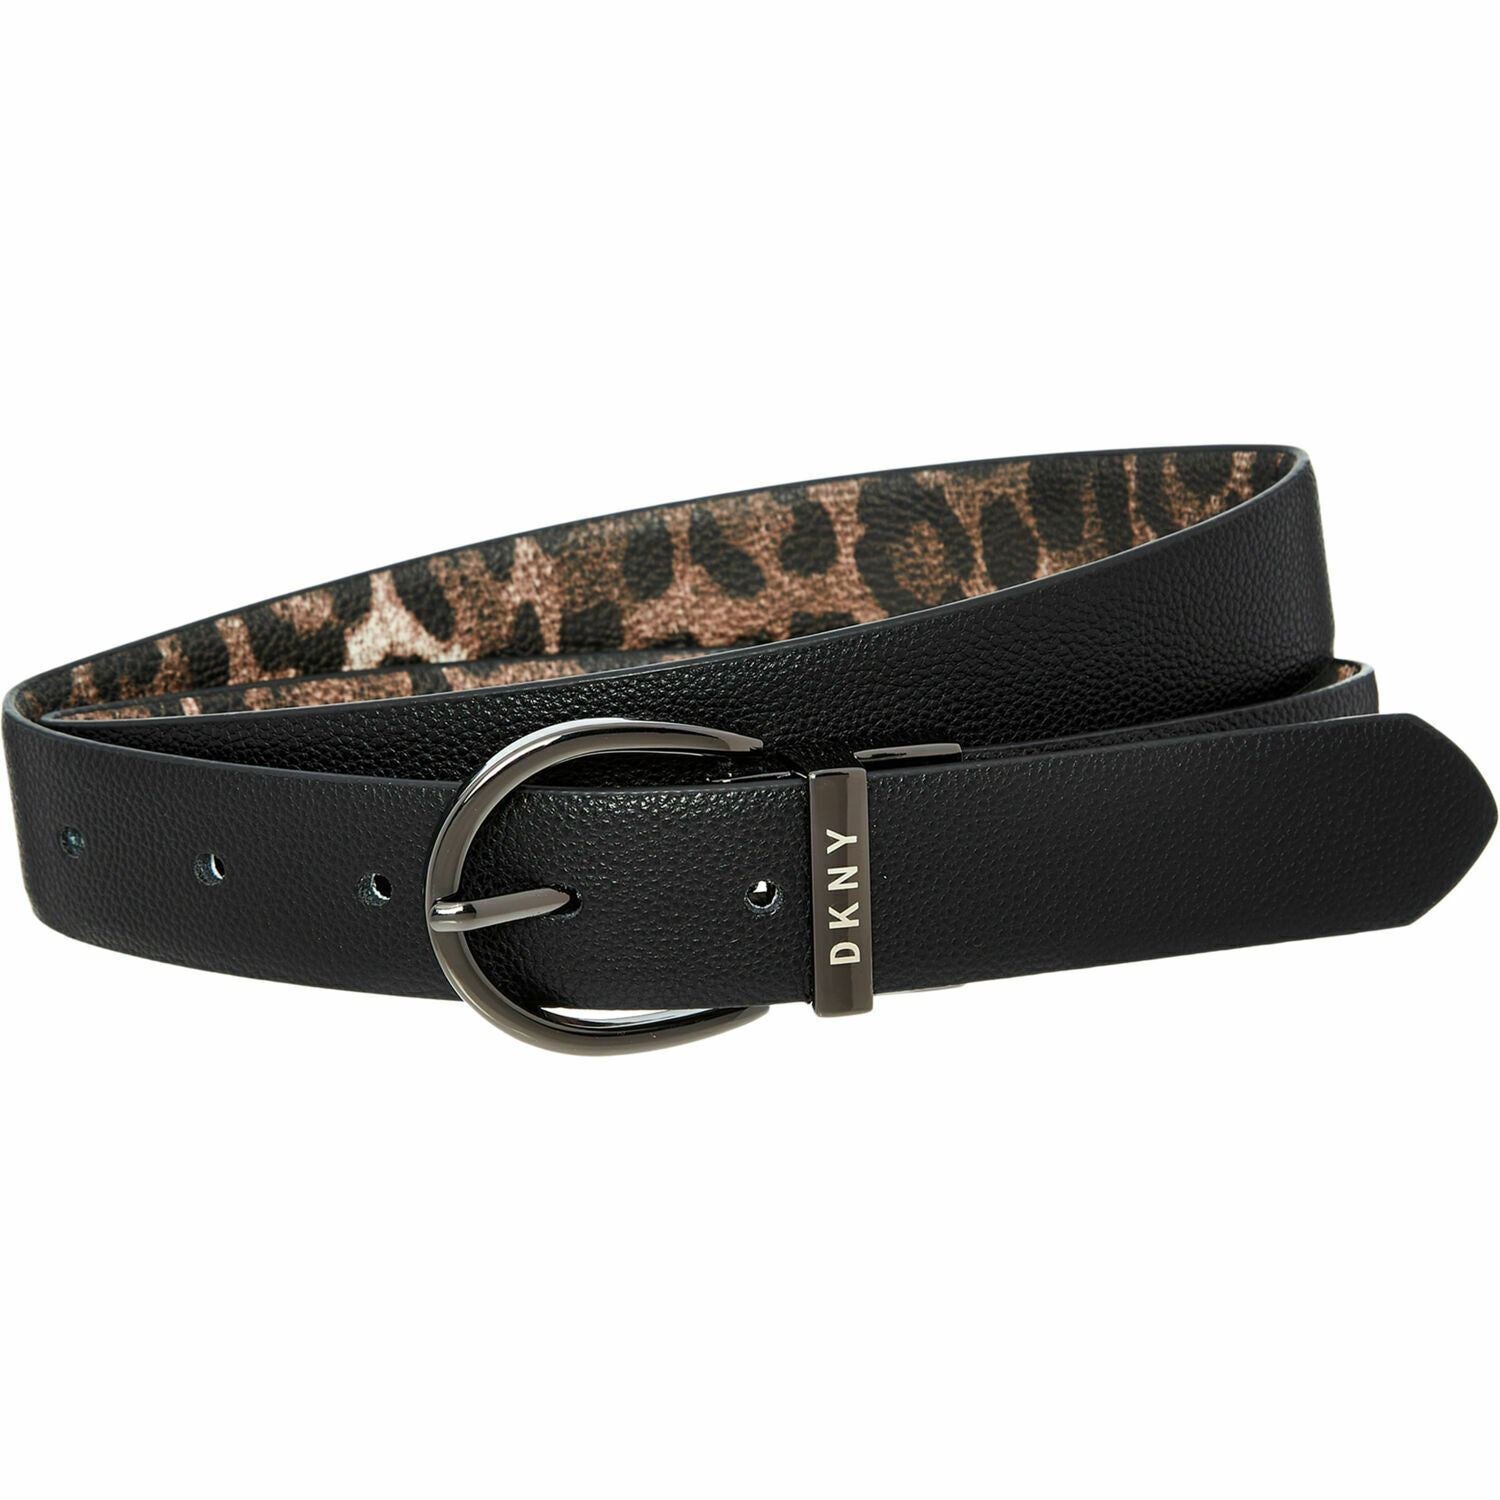 DKNY Women's Faux Leather Reversible Belt, Black /Leopard Print, 1" wide, size M